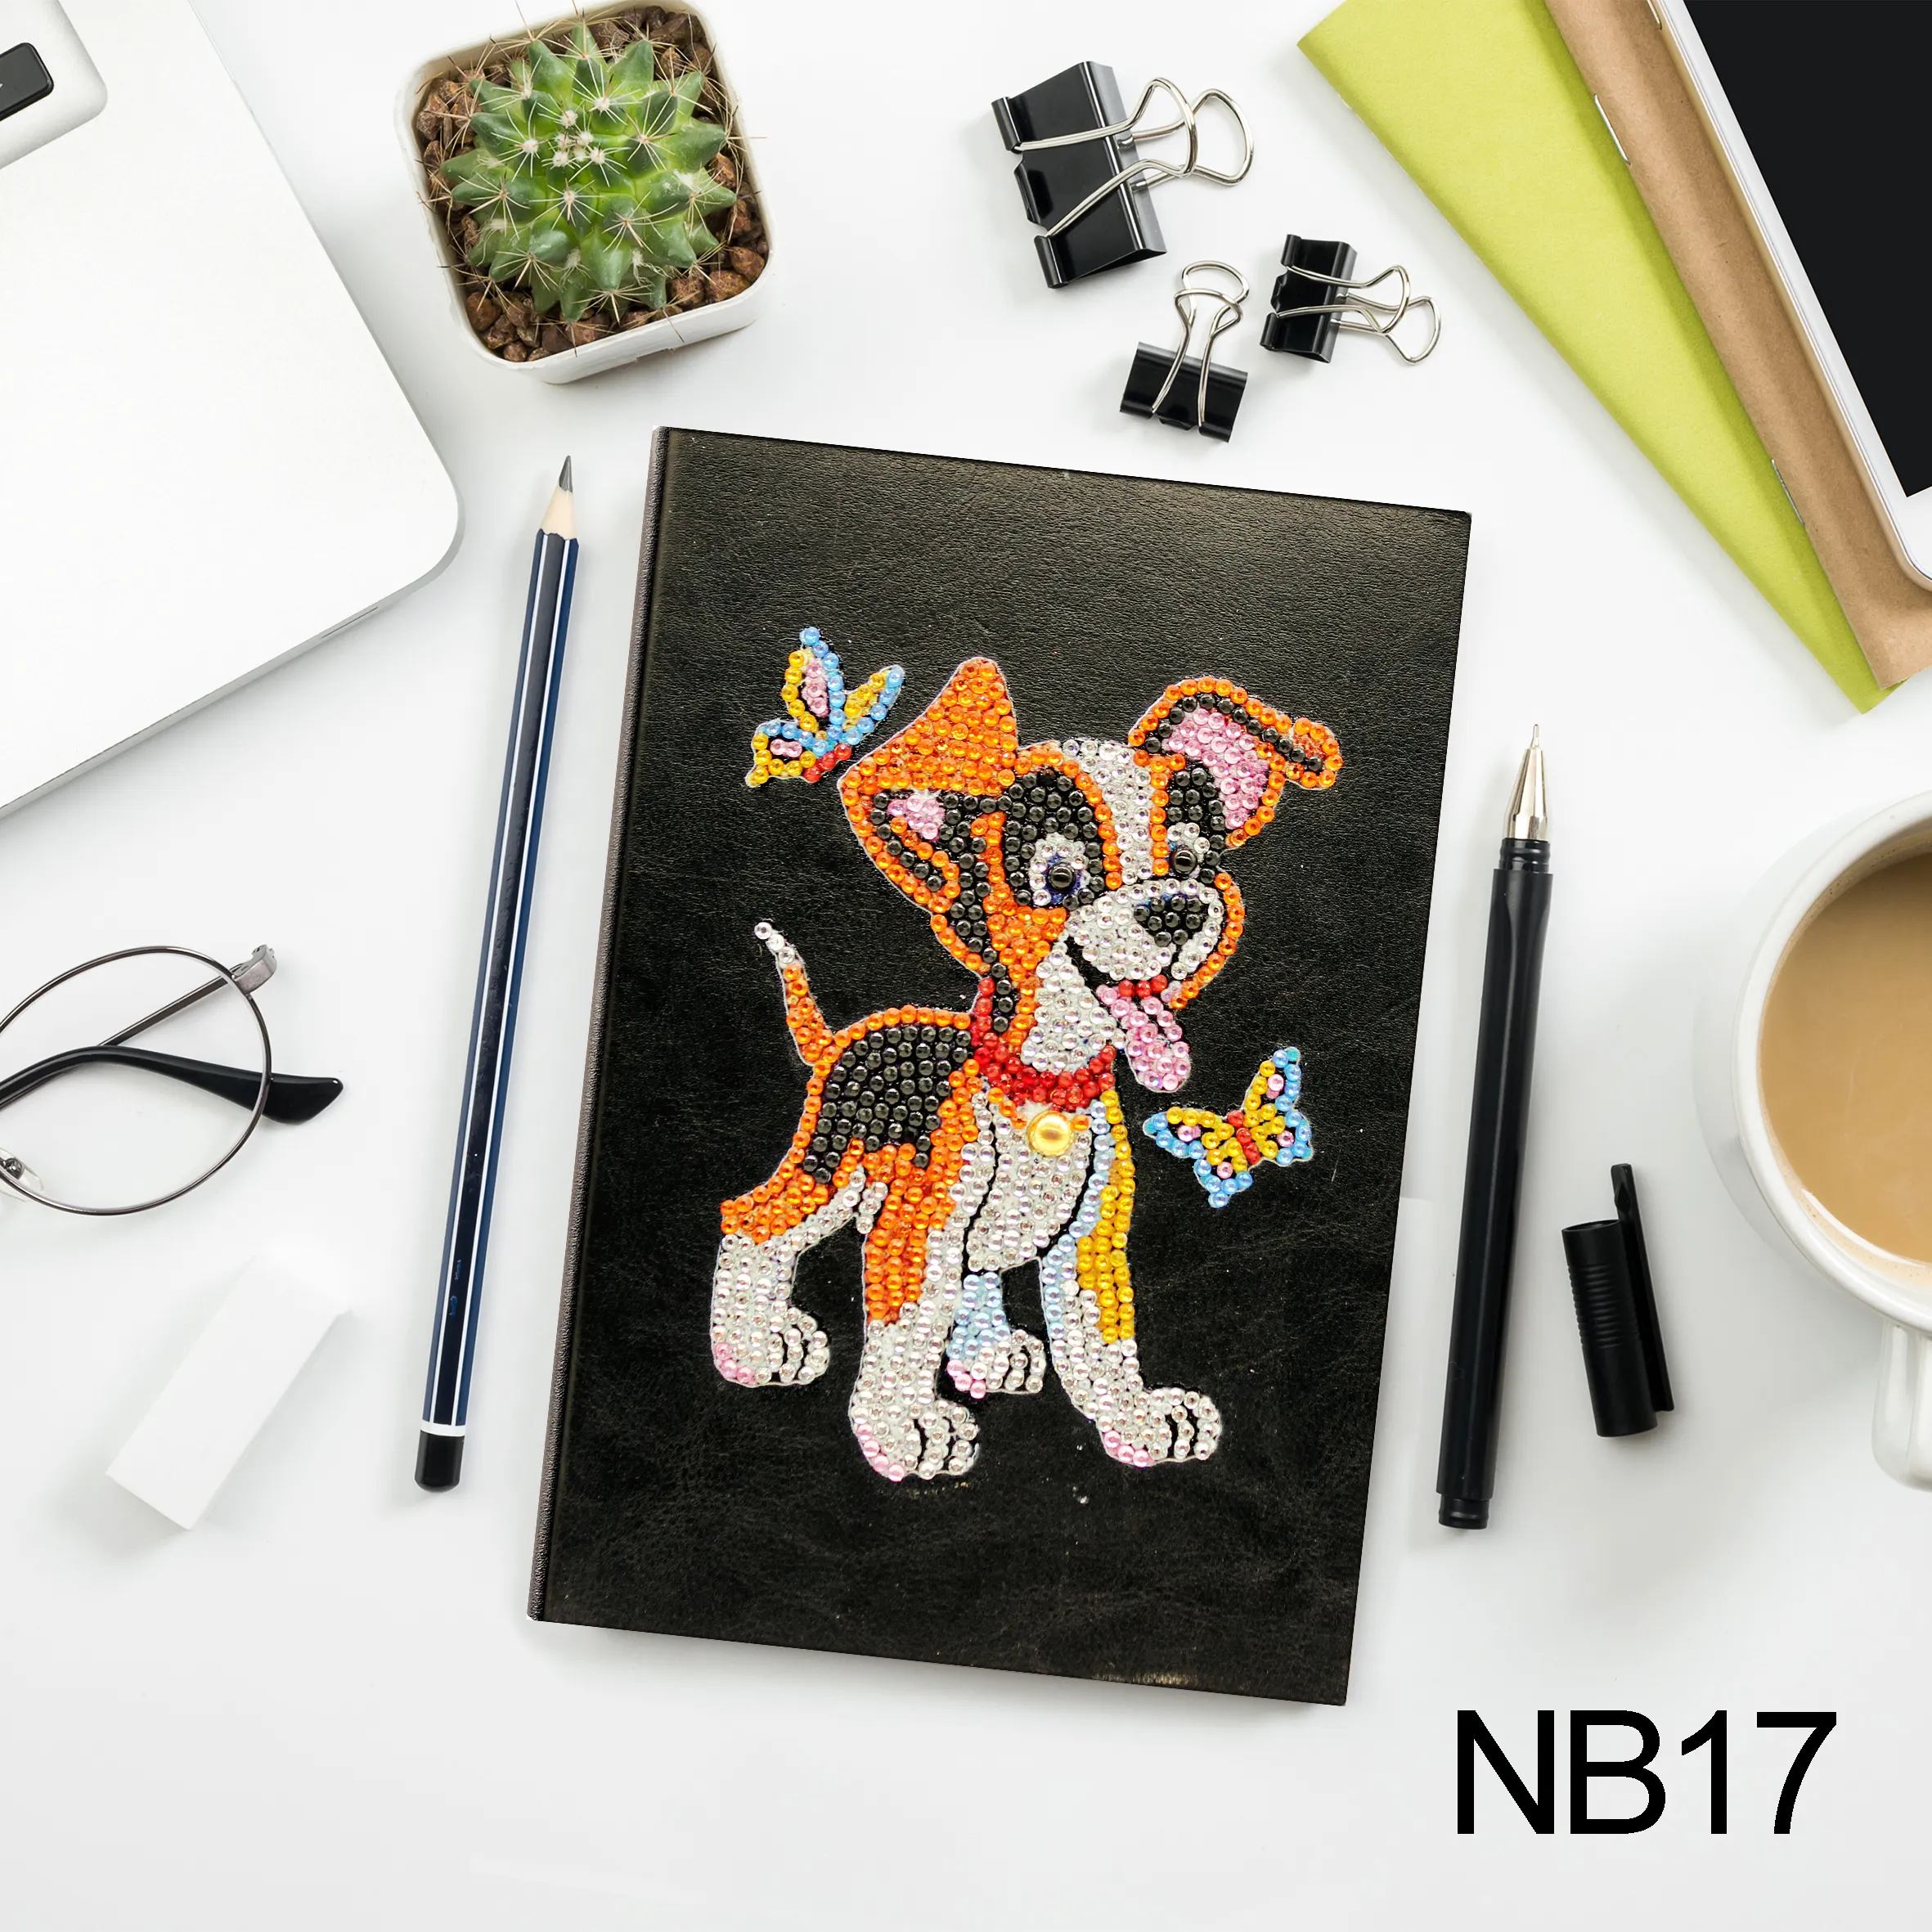 Estilo más Popular personalizado DIY lindo Animal serie diamante pintura A5 cuaderno 64 páginas libro